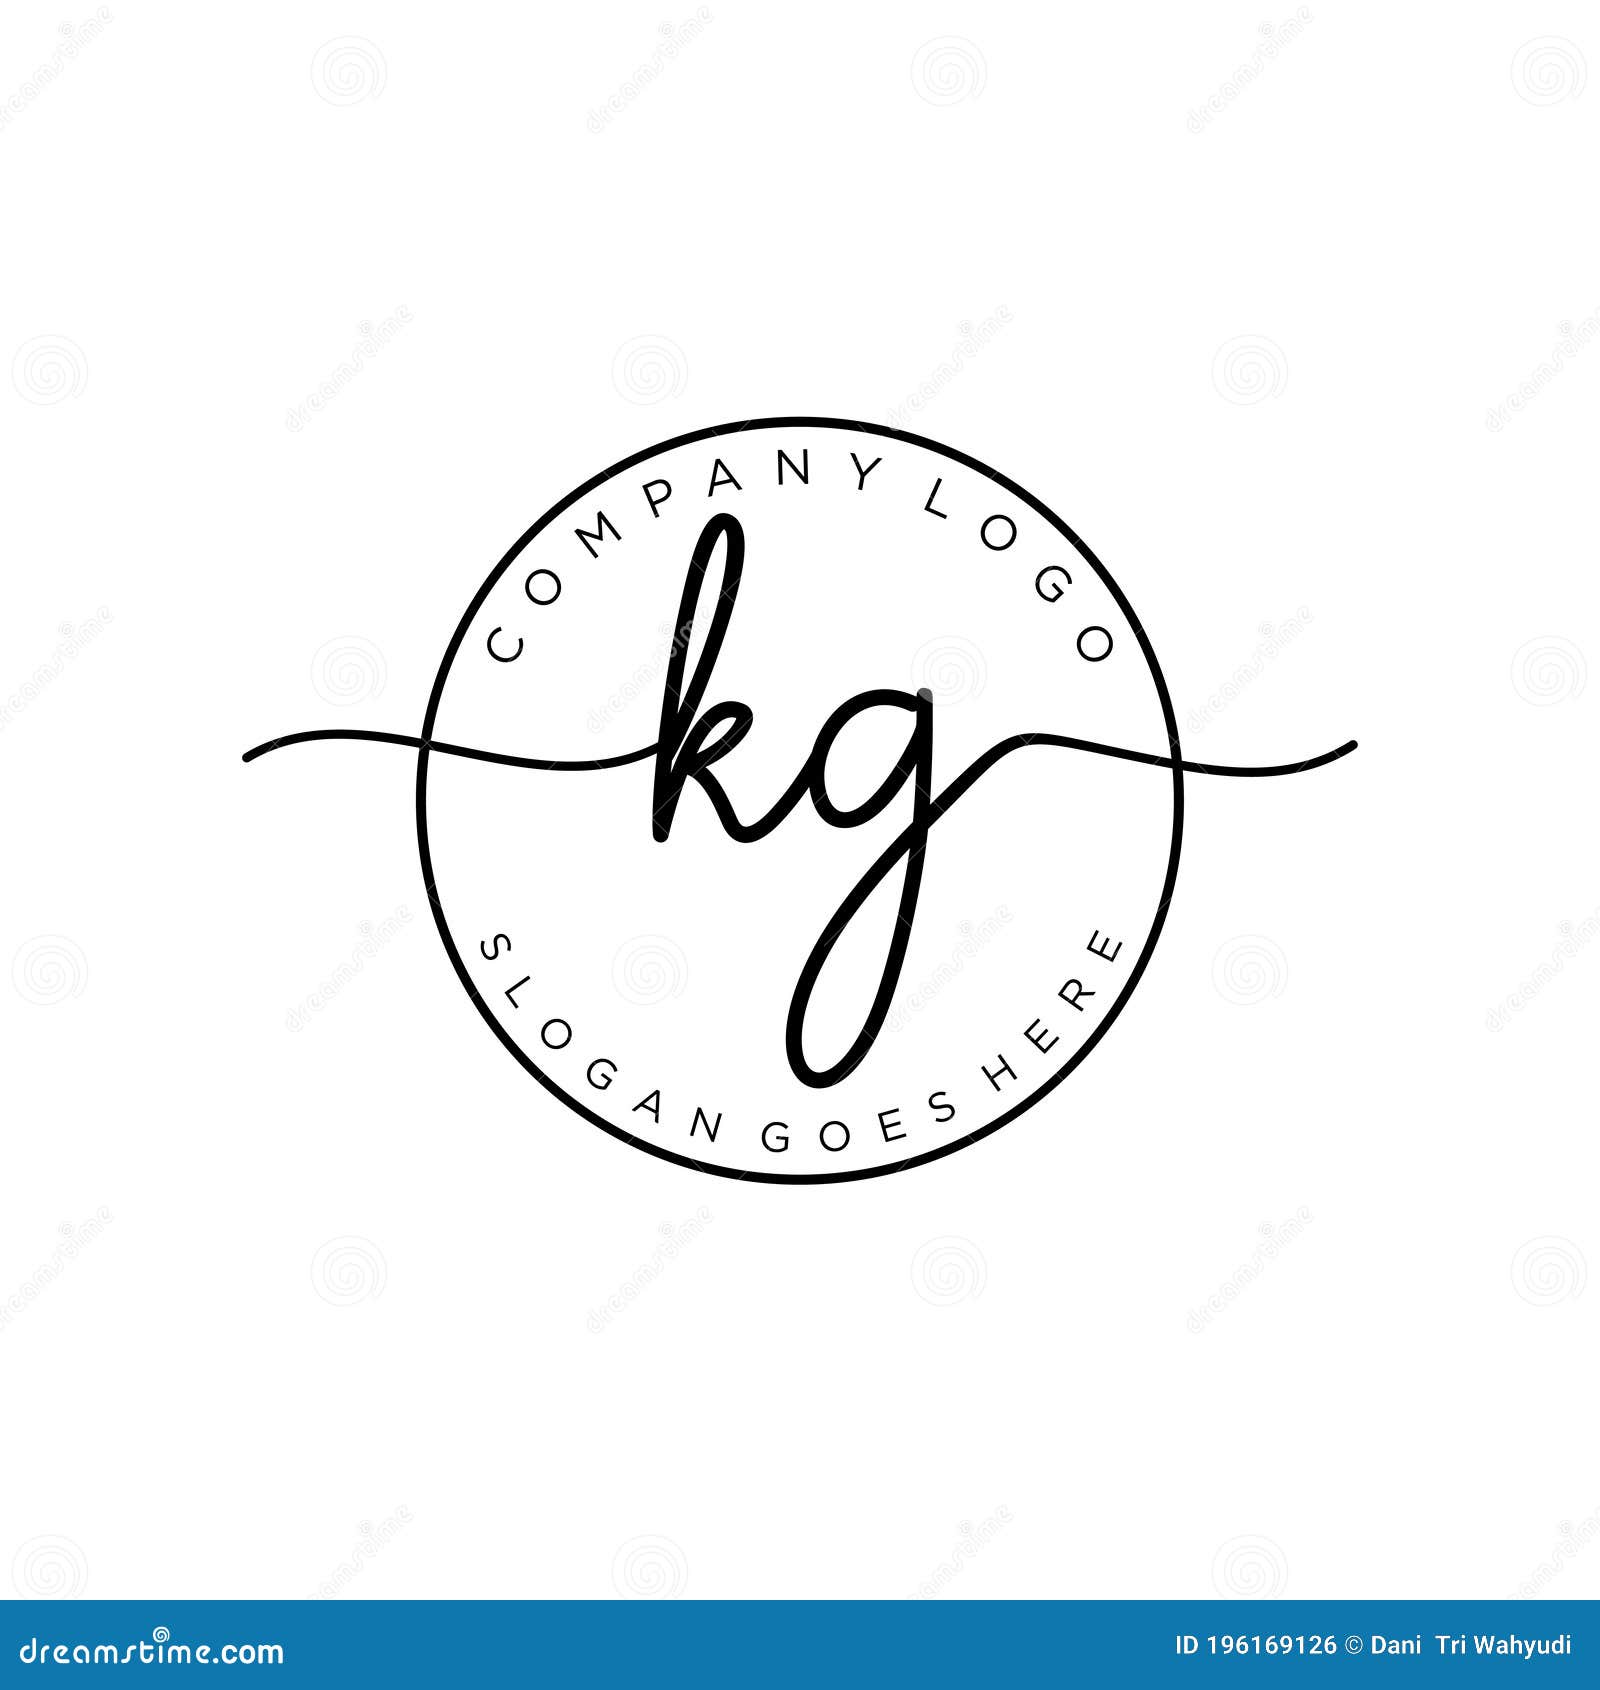 Kg Logo PNG Transparent Images Free Download | Vector Files | Pngtree